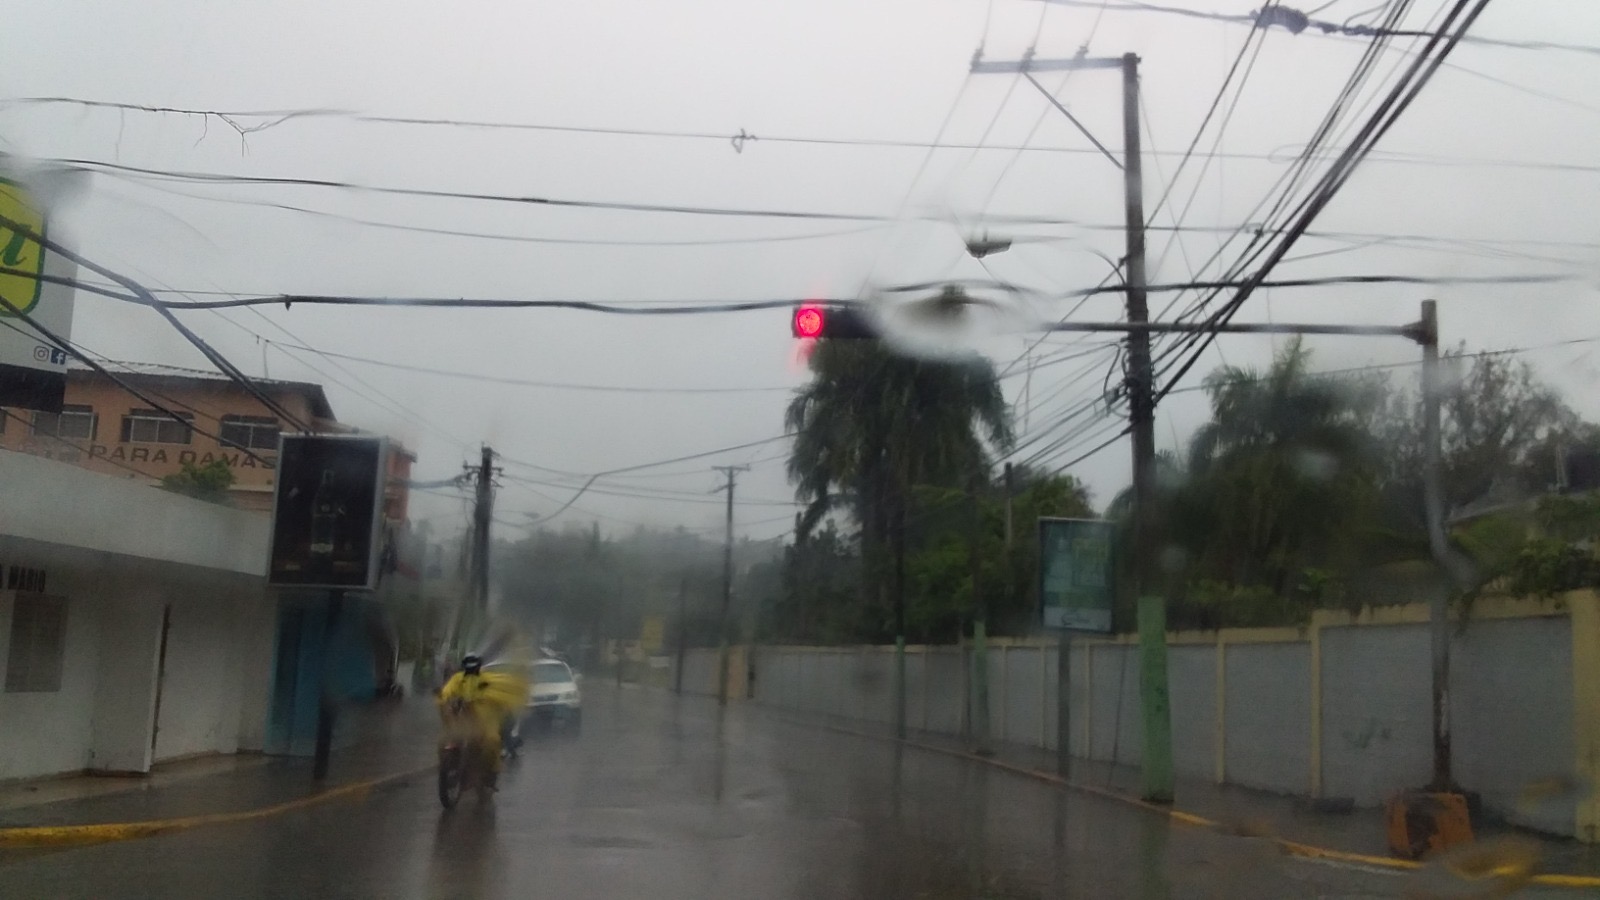     Meteorología pronostica lluvias pasajeras en Puerto Plata durante el fin de semana